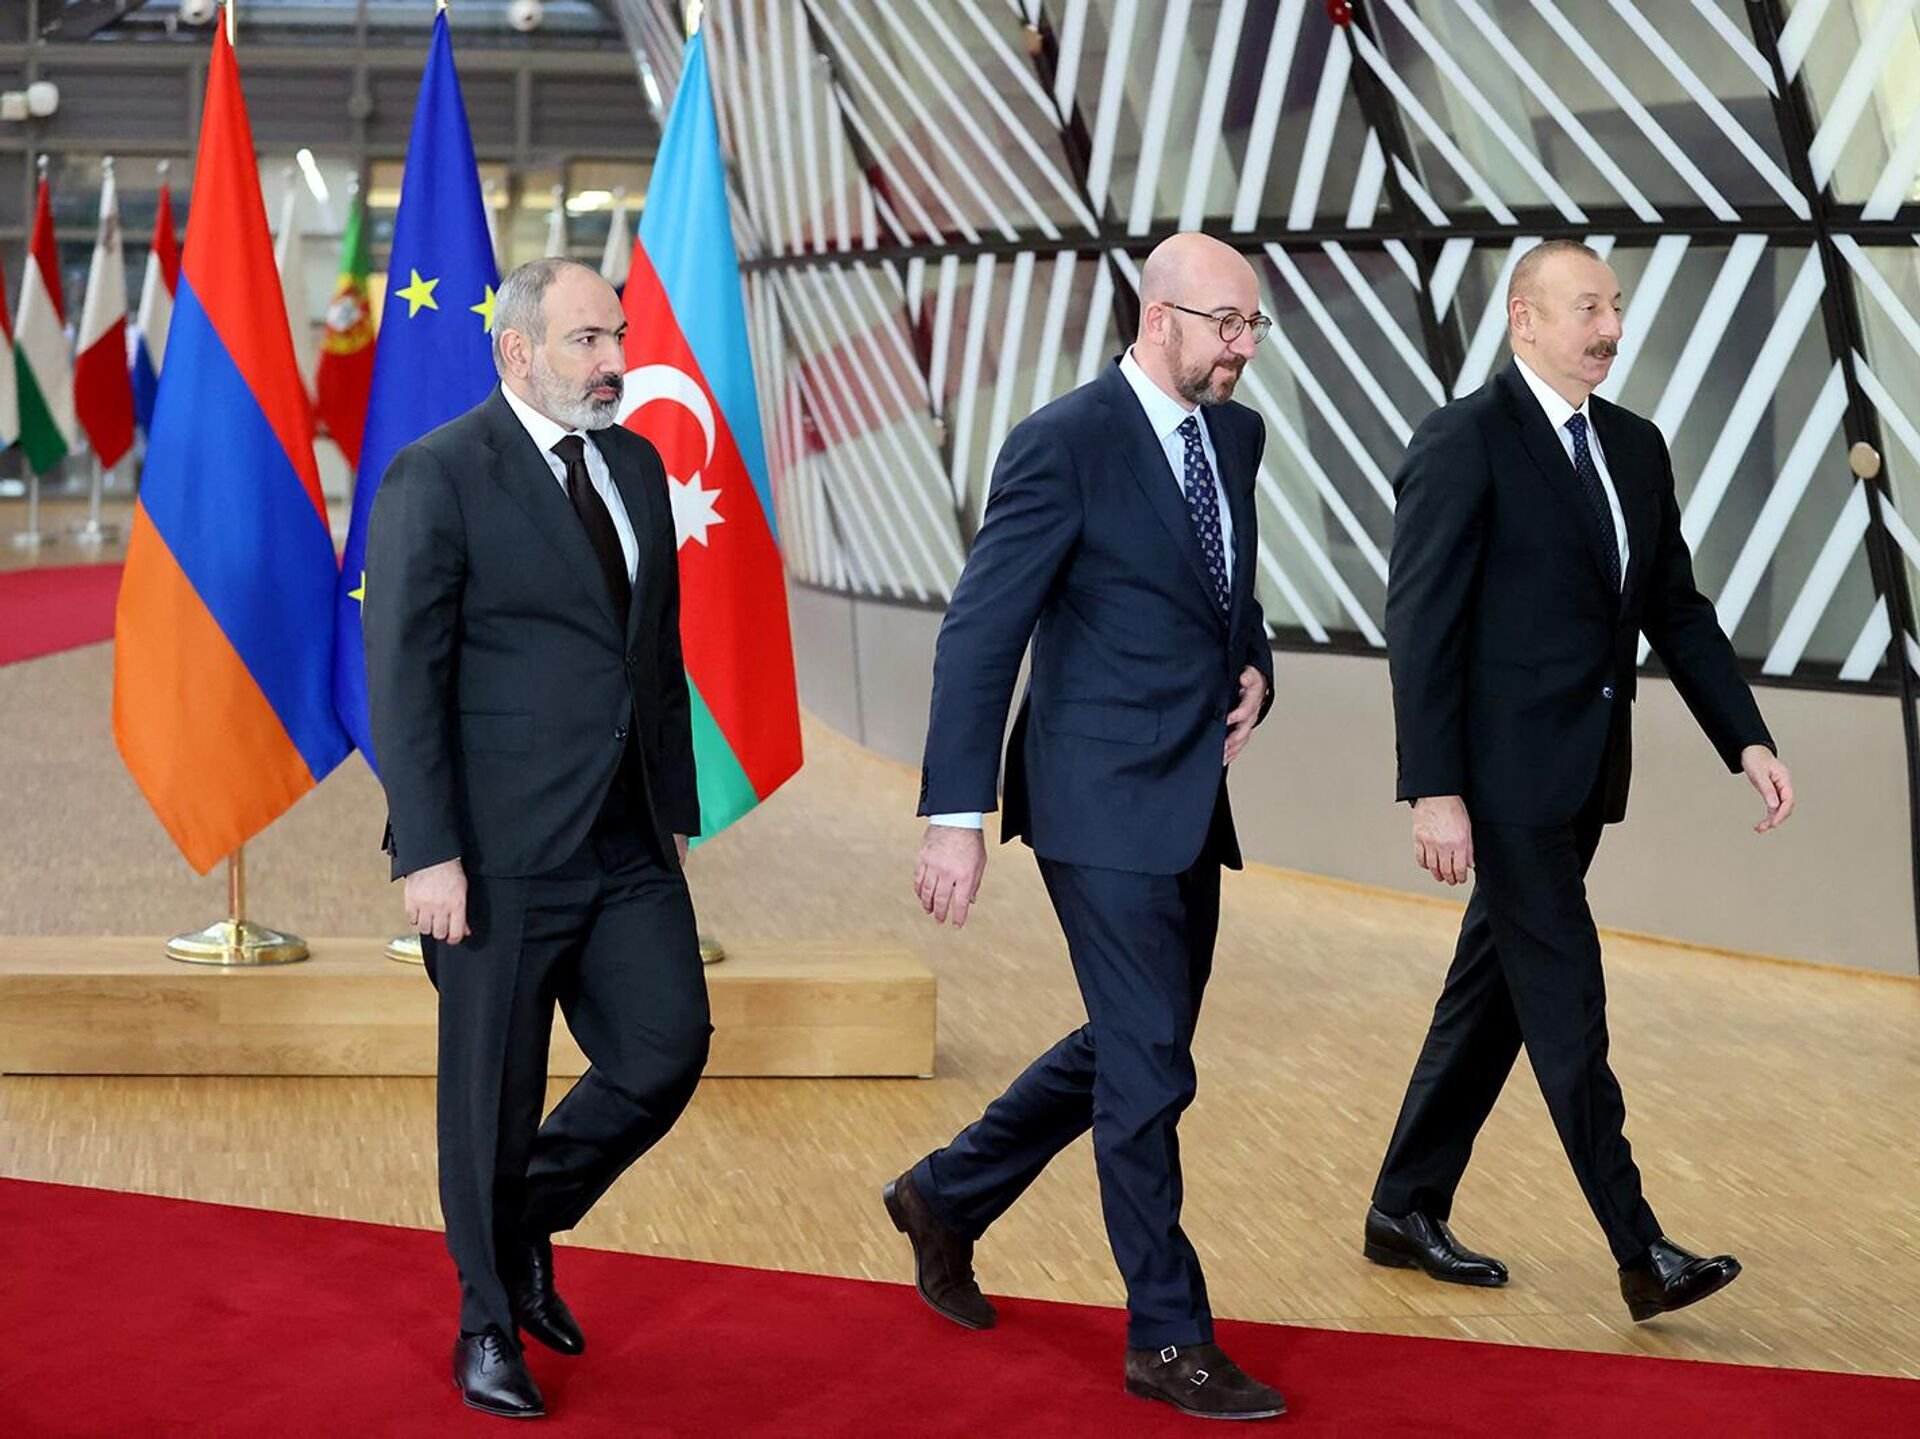 Առաջիկա օրերին Հայաստան - Ադրբեջան սահմանին տեղի կունենա սահմանագծման հանձնաժողովի առաջին նիստը